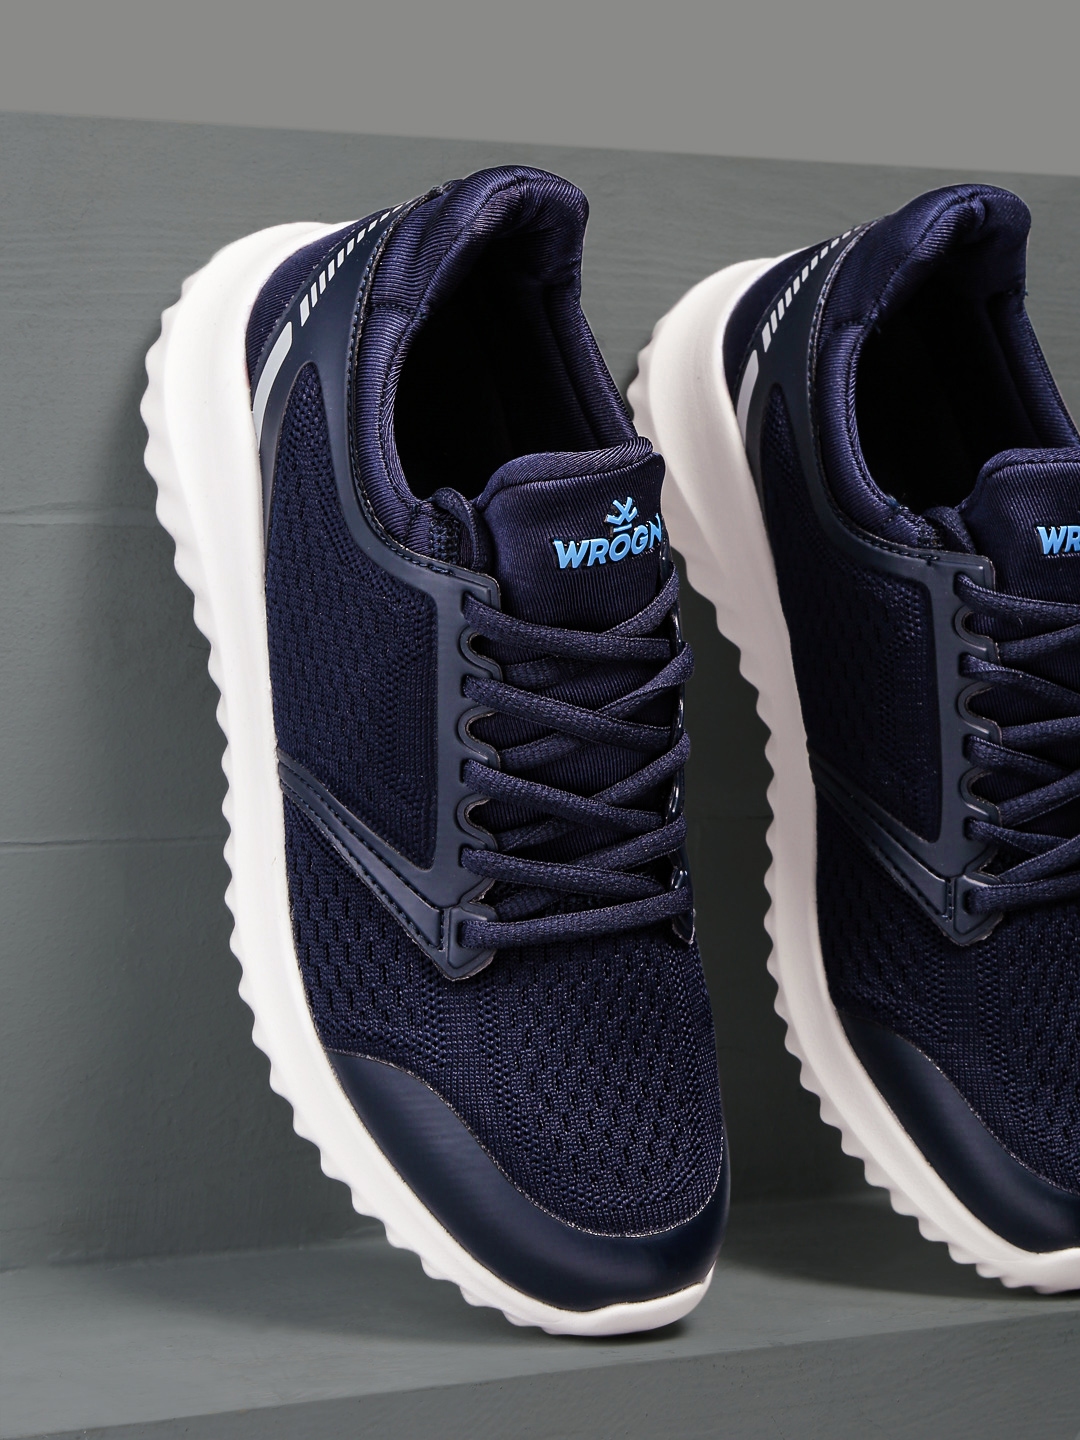 wrogn navy blue sneakers